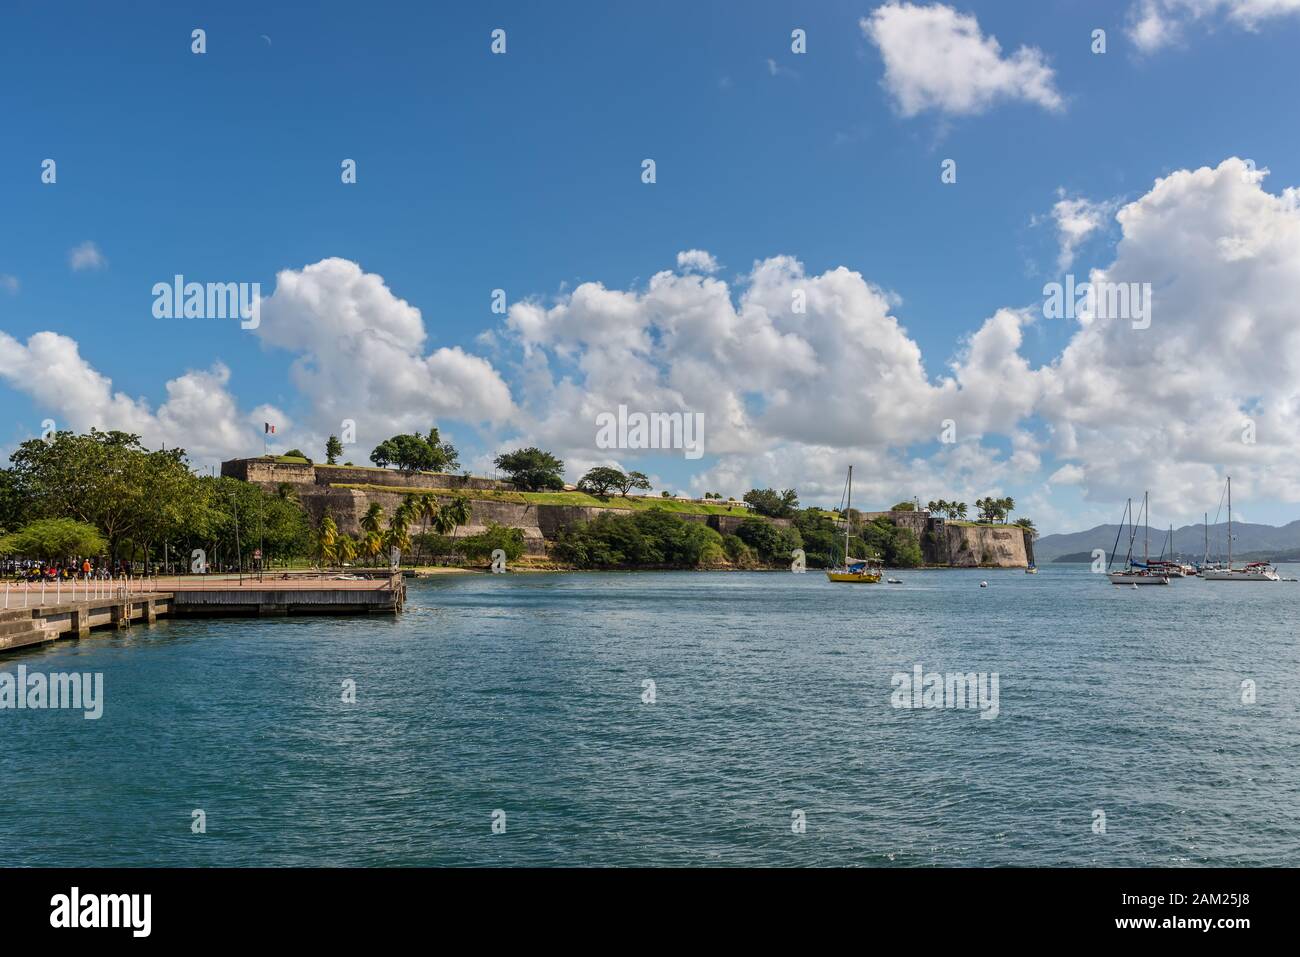 Fort-de-France, Martinique - Le 13 décembre 2018 : Fort Saint Louis de Fort-de-France Bay, Martinique, Antilles françaises, Caraïbes. Banque D'Images